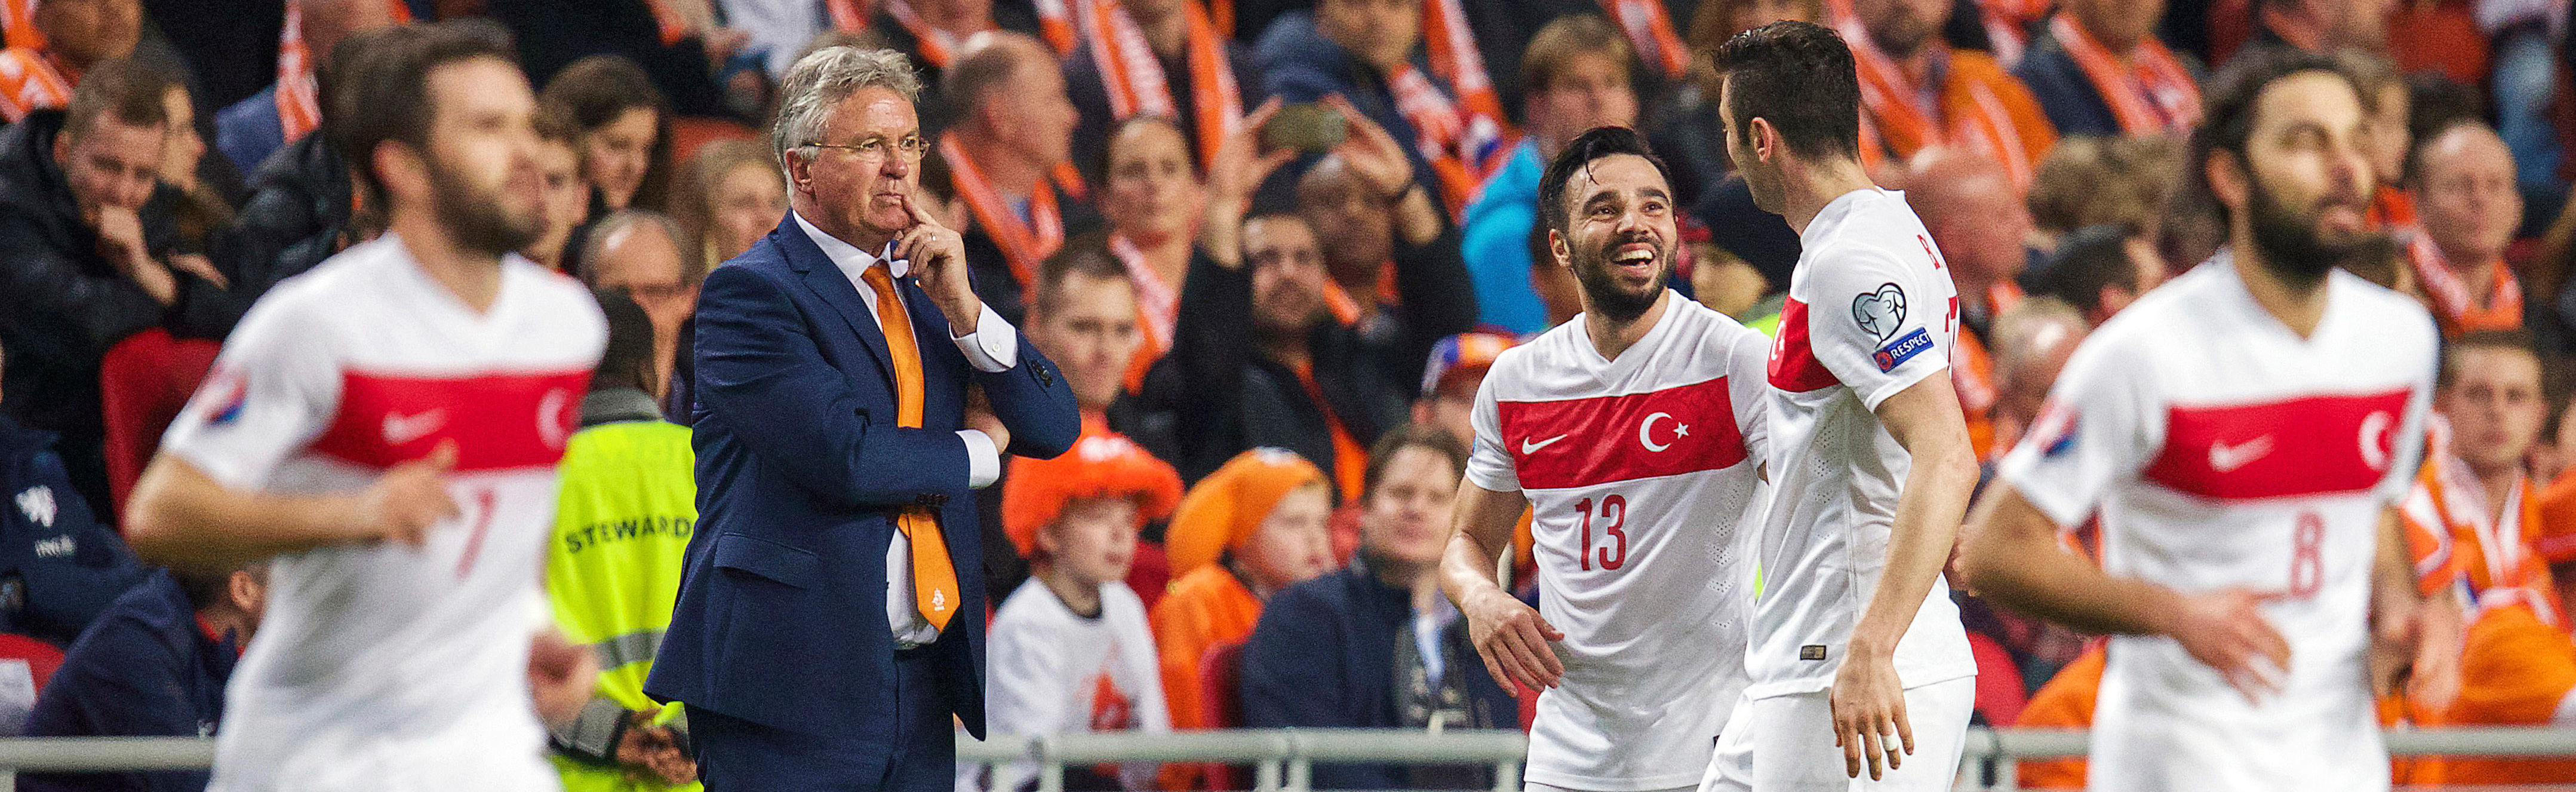 Tussen de feestende Turken kijkt Hiddink bedenkelijk. Hoe krijgt hij Oranje weer aan de praat?